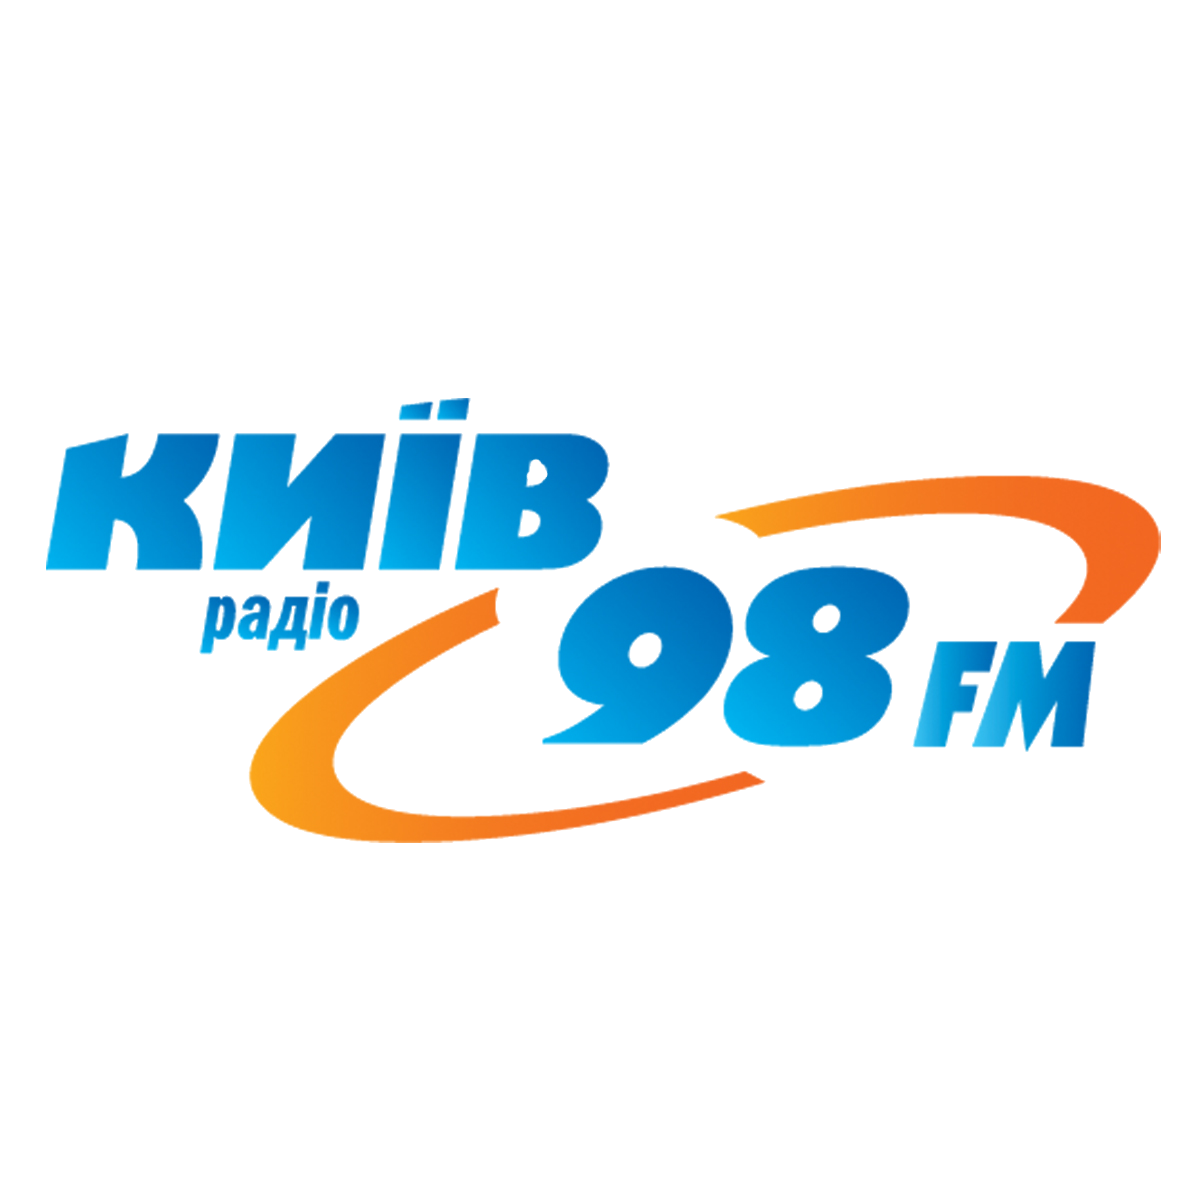 Радио Киев 98 FM